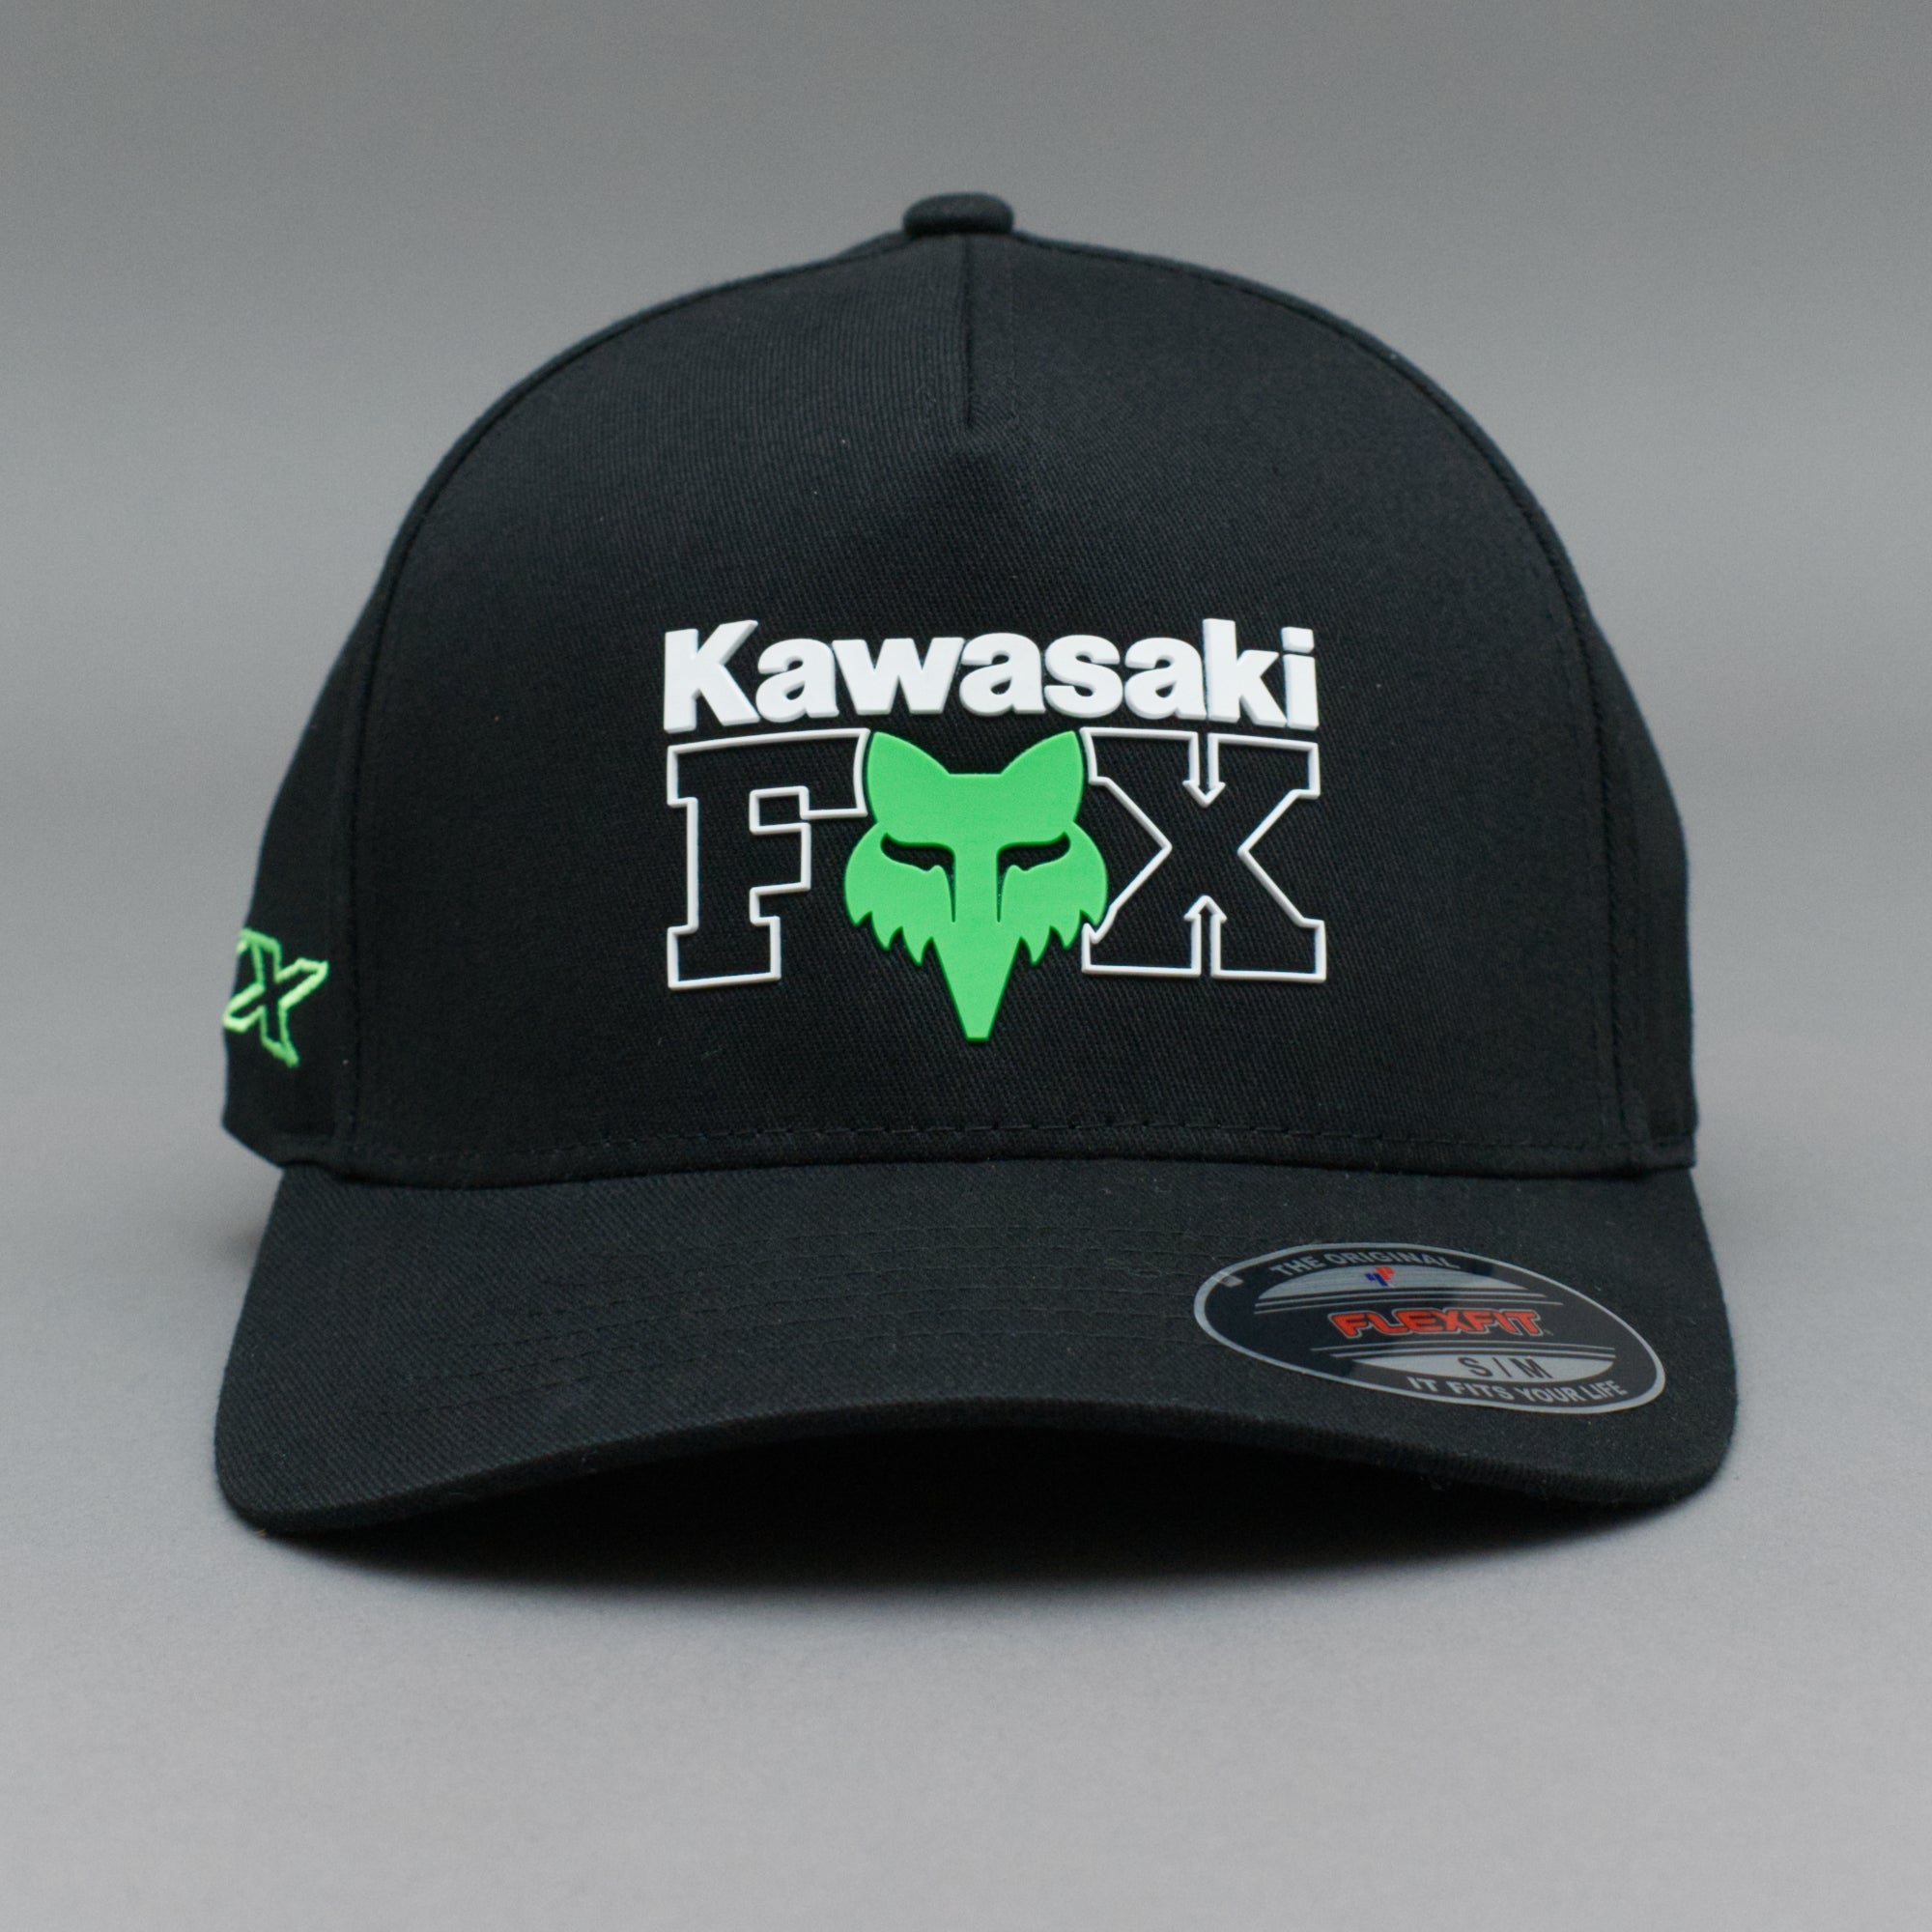 Fox - Kawasaki - Flexfit - Black